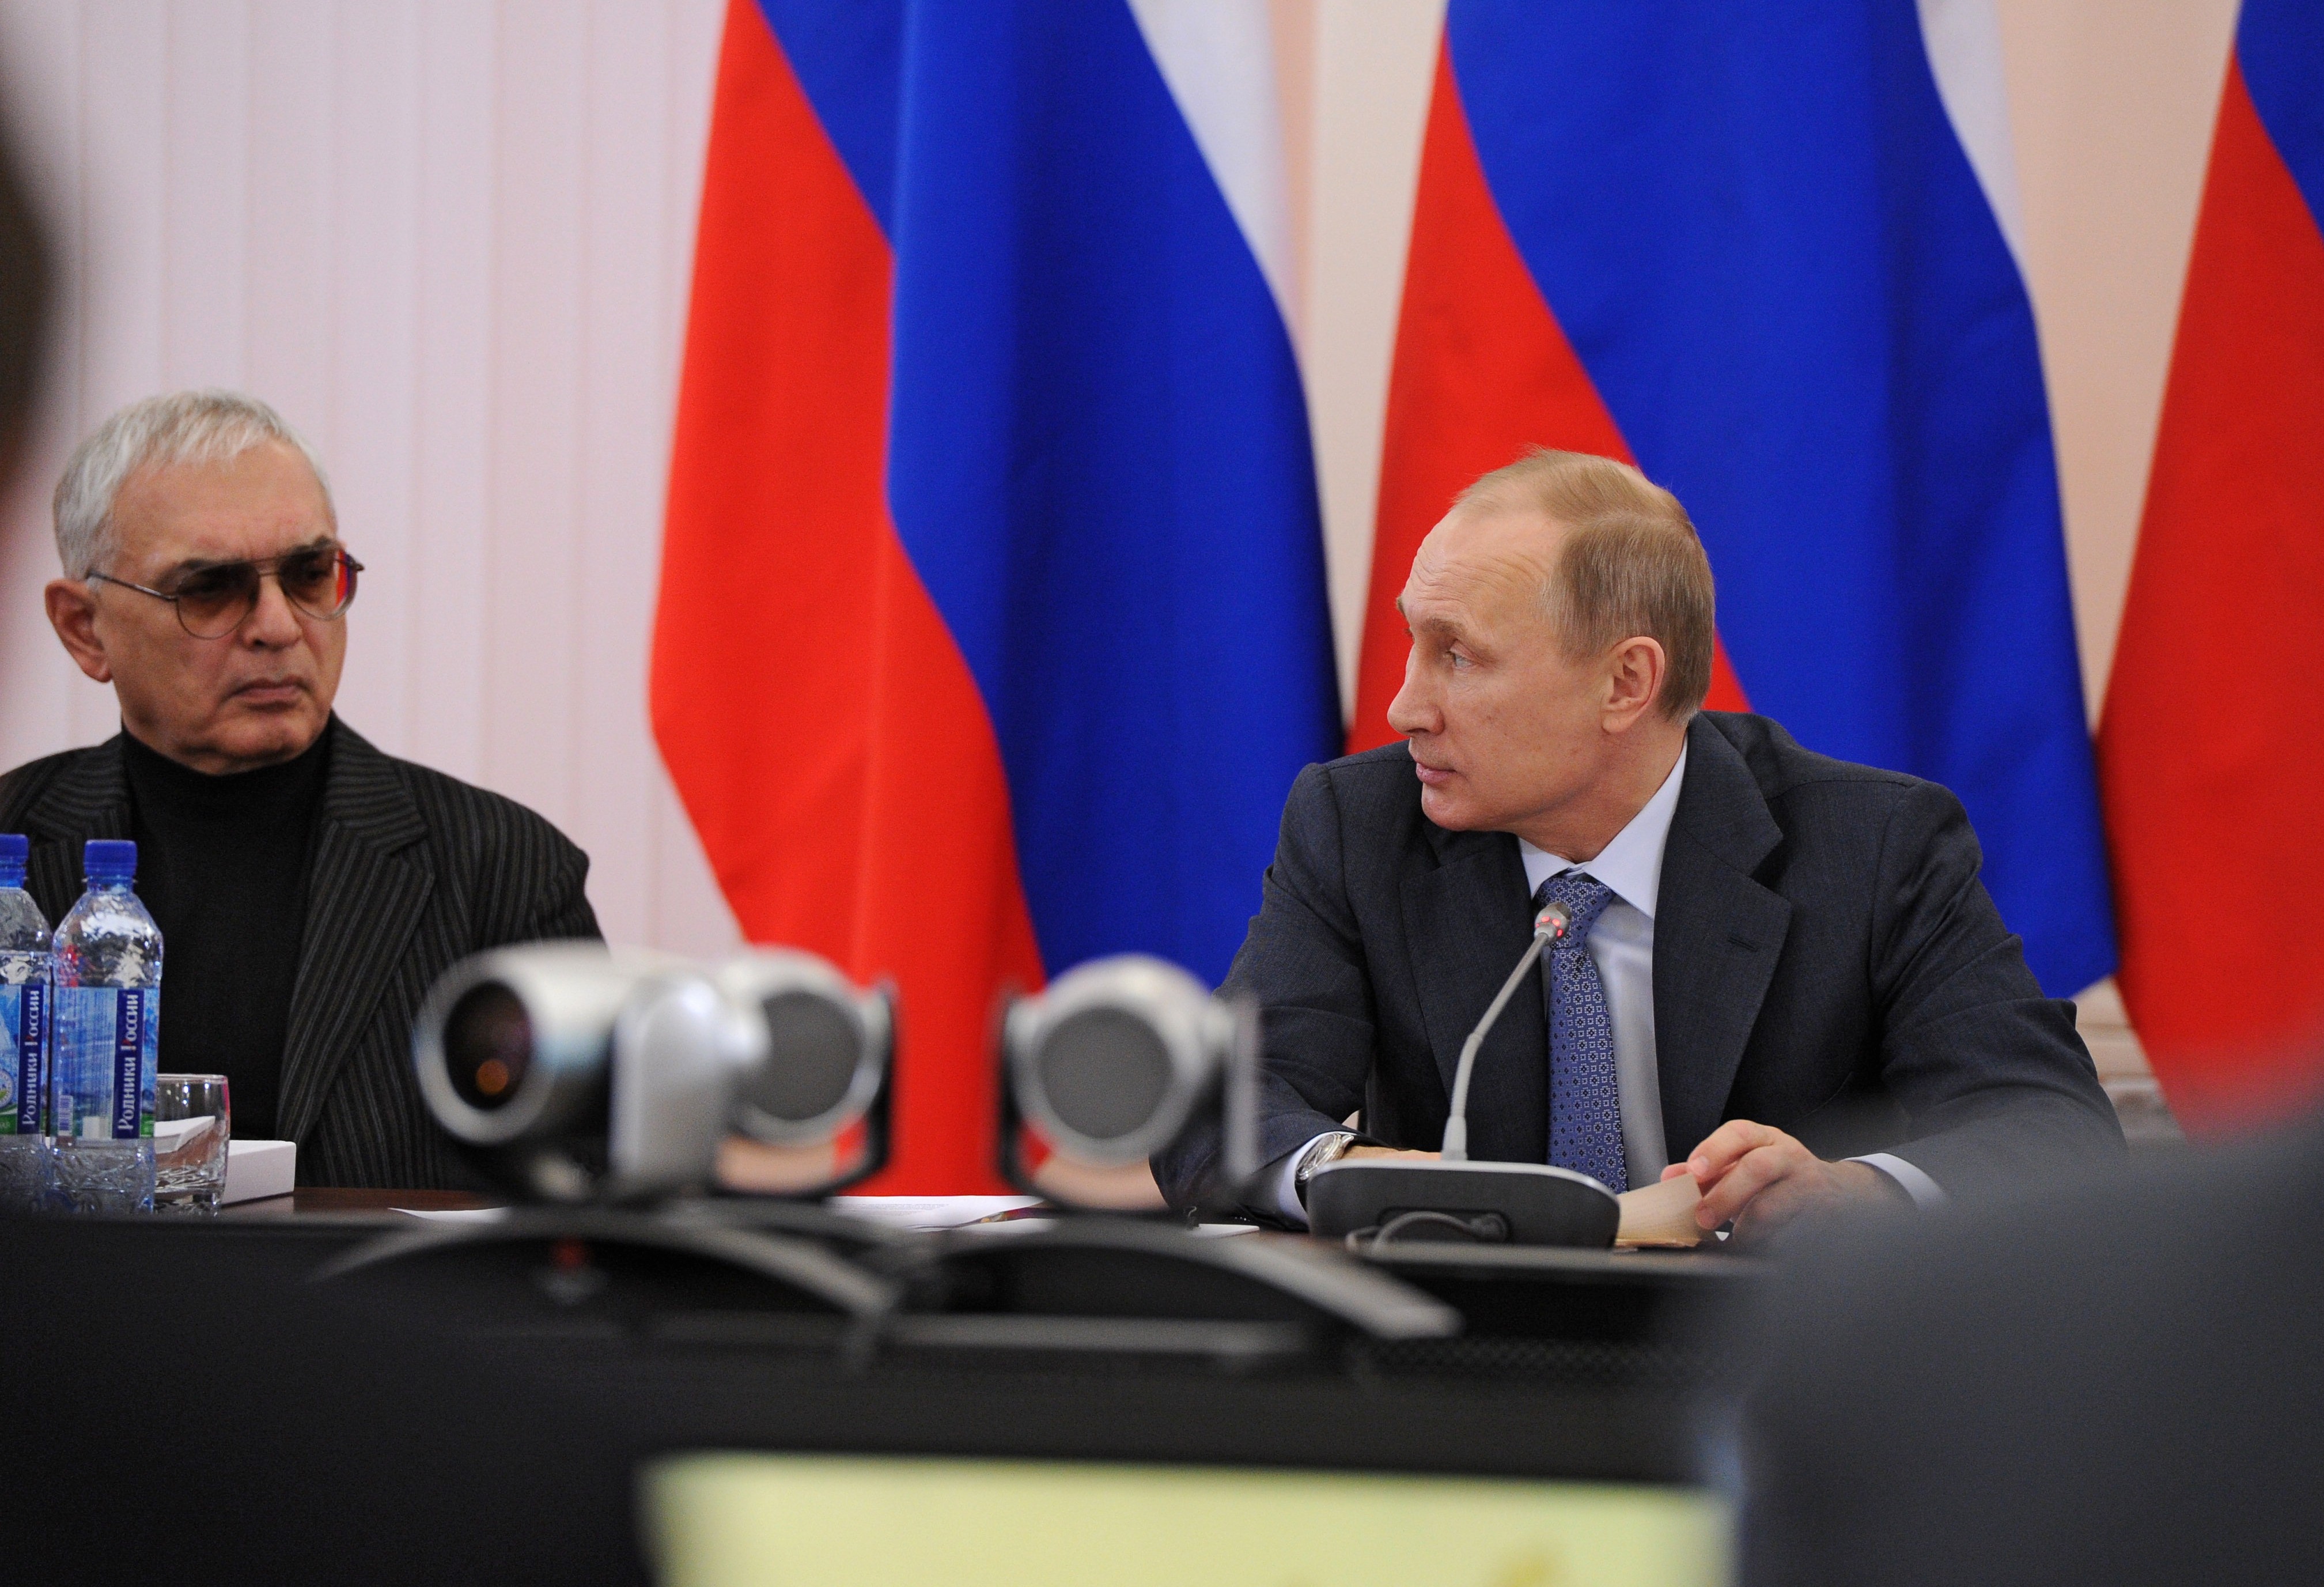 Карен Шахназаров и Владимир Путин. Фото: &copy;РИА Новости/Михаил Климентьев